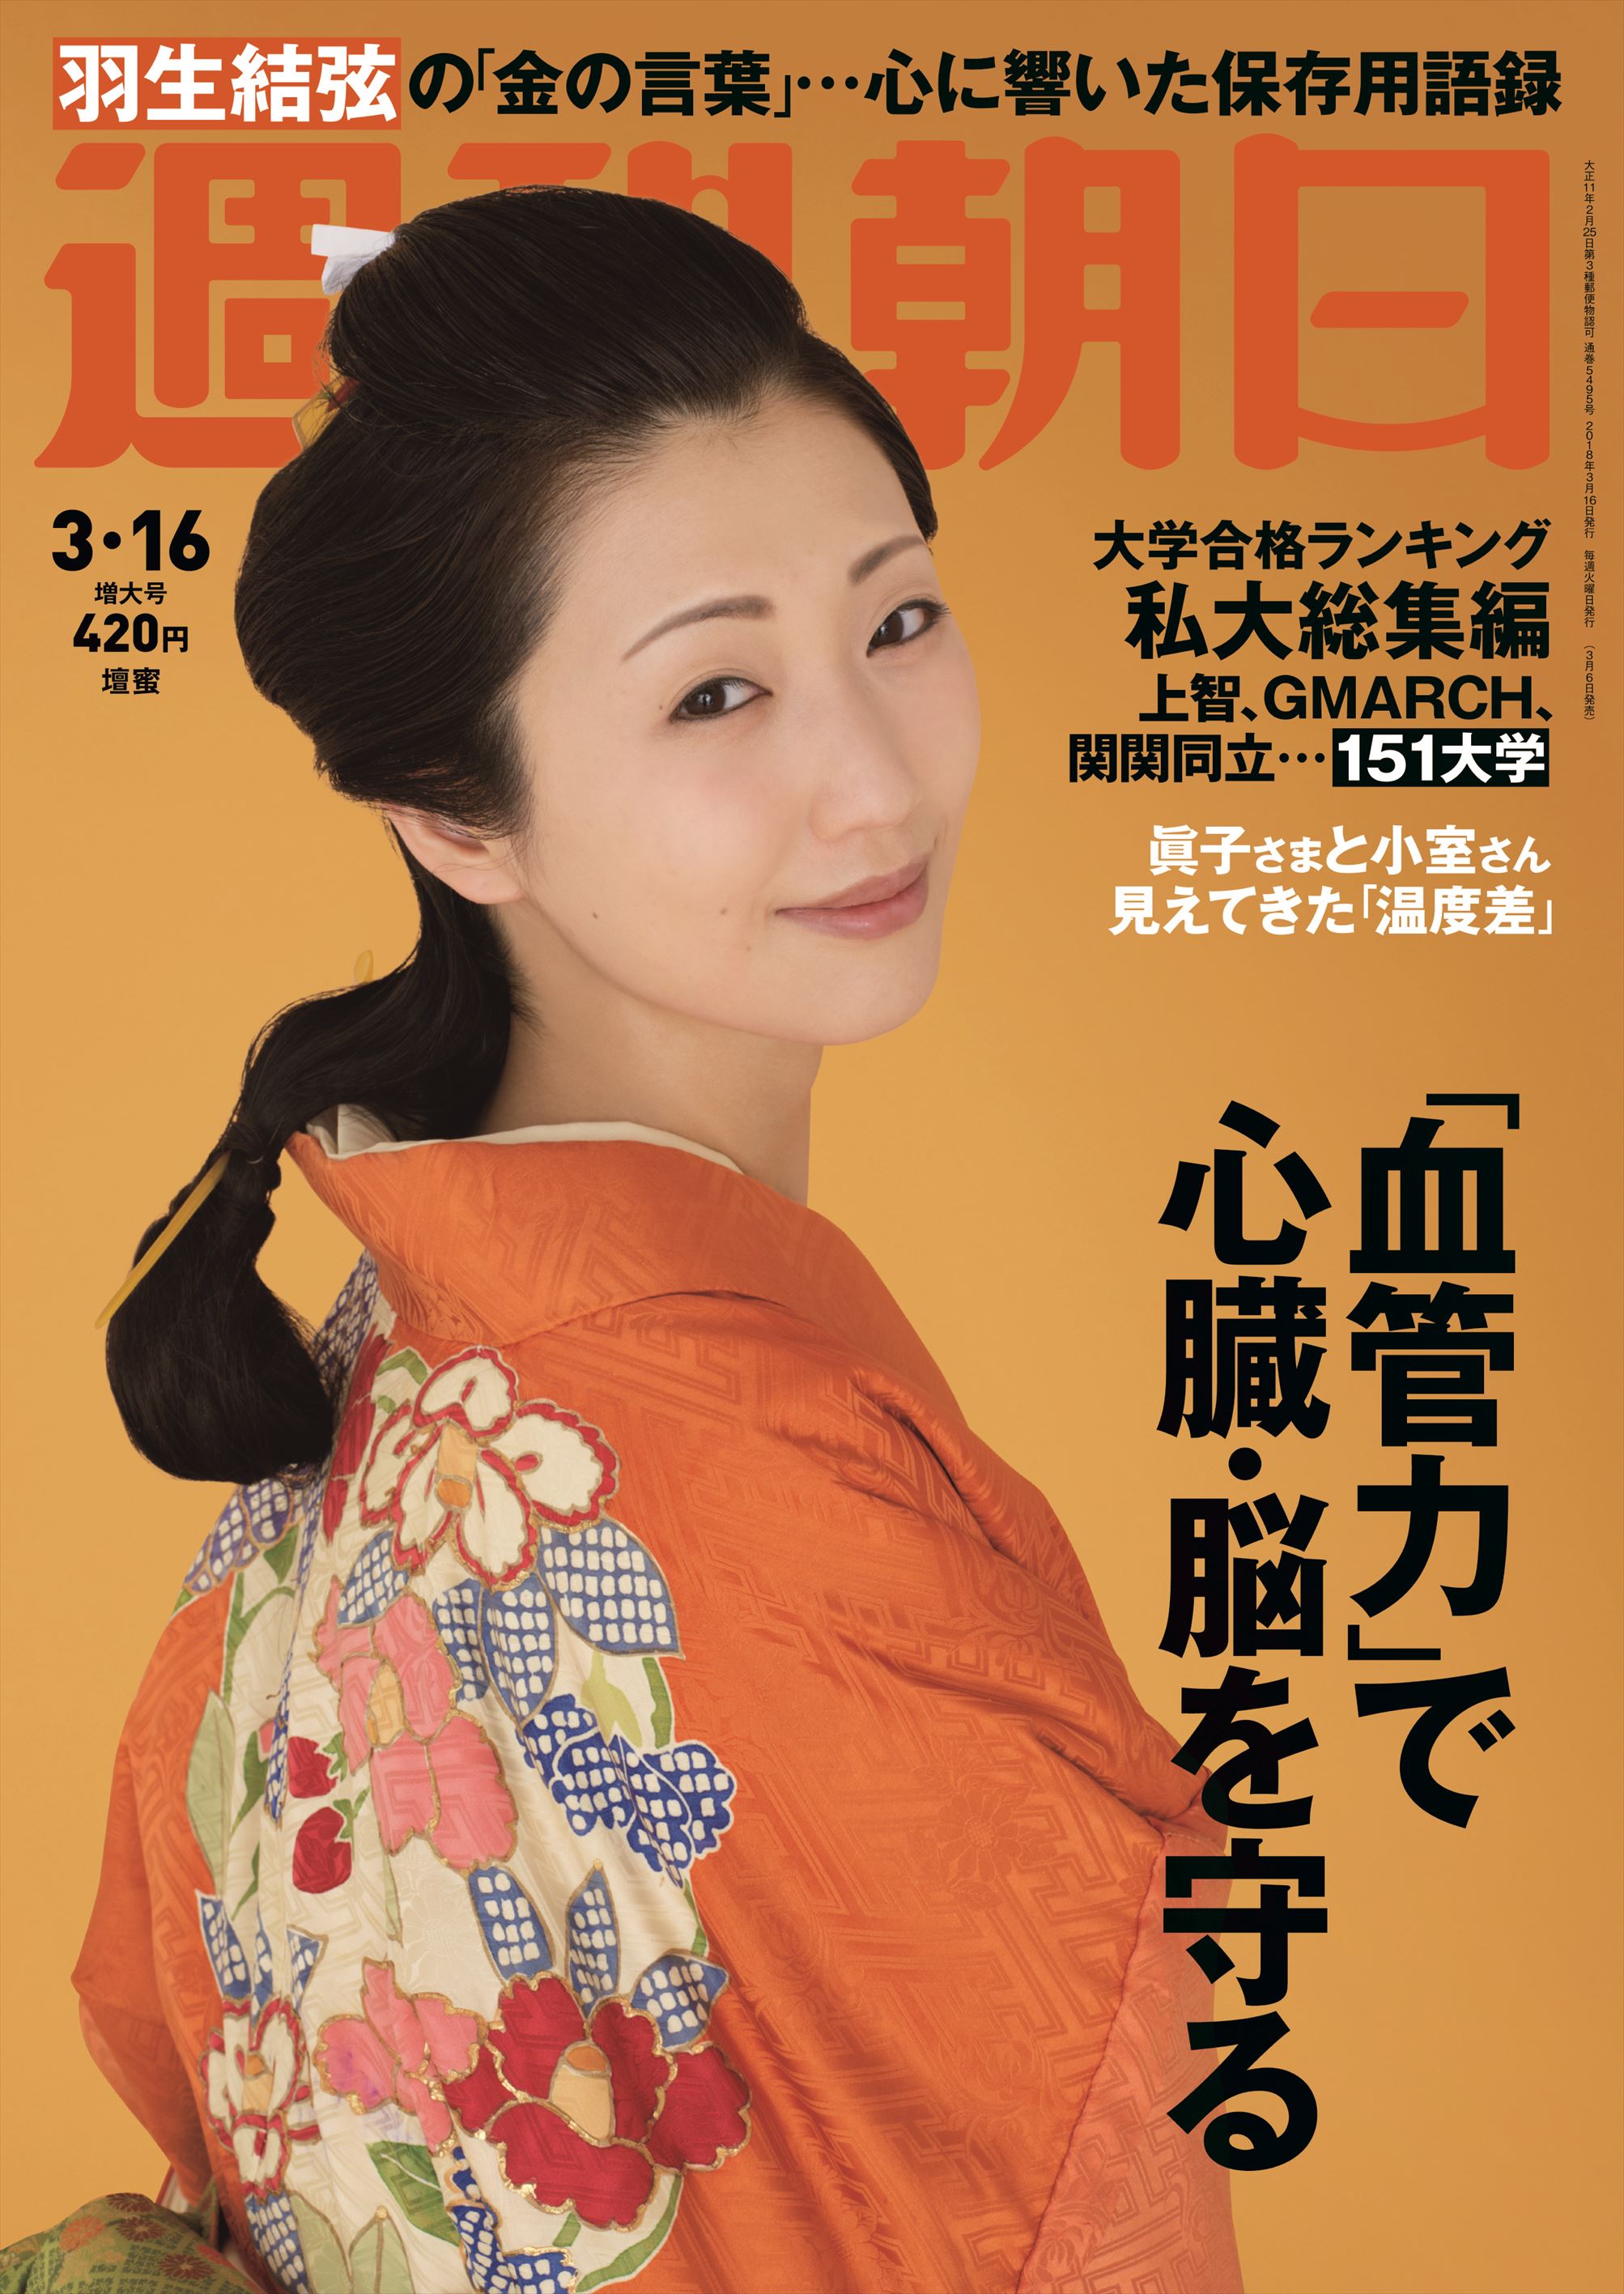 壇蜜さんが名画 見返り美人図 に扮して 週刊朝日 に登場 株式会社朝日新聞出版のプレスリリース